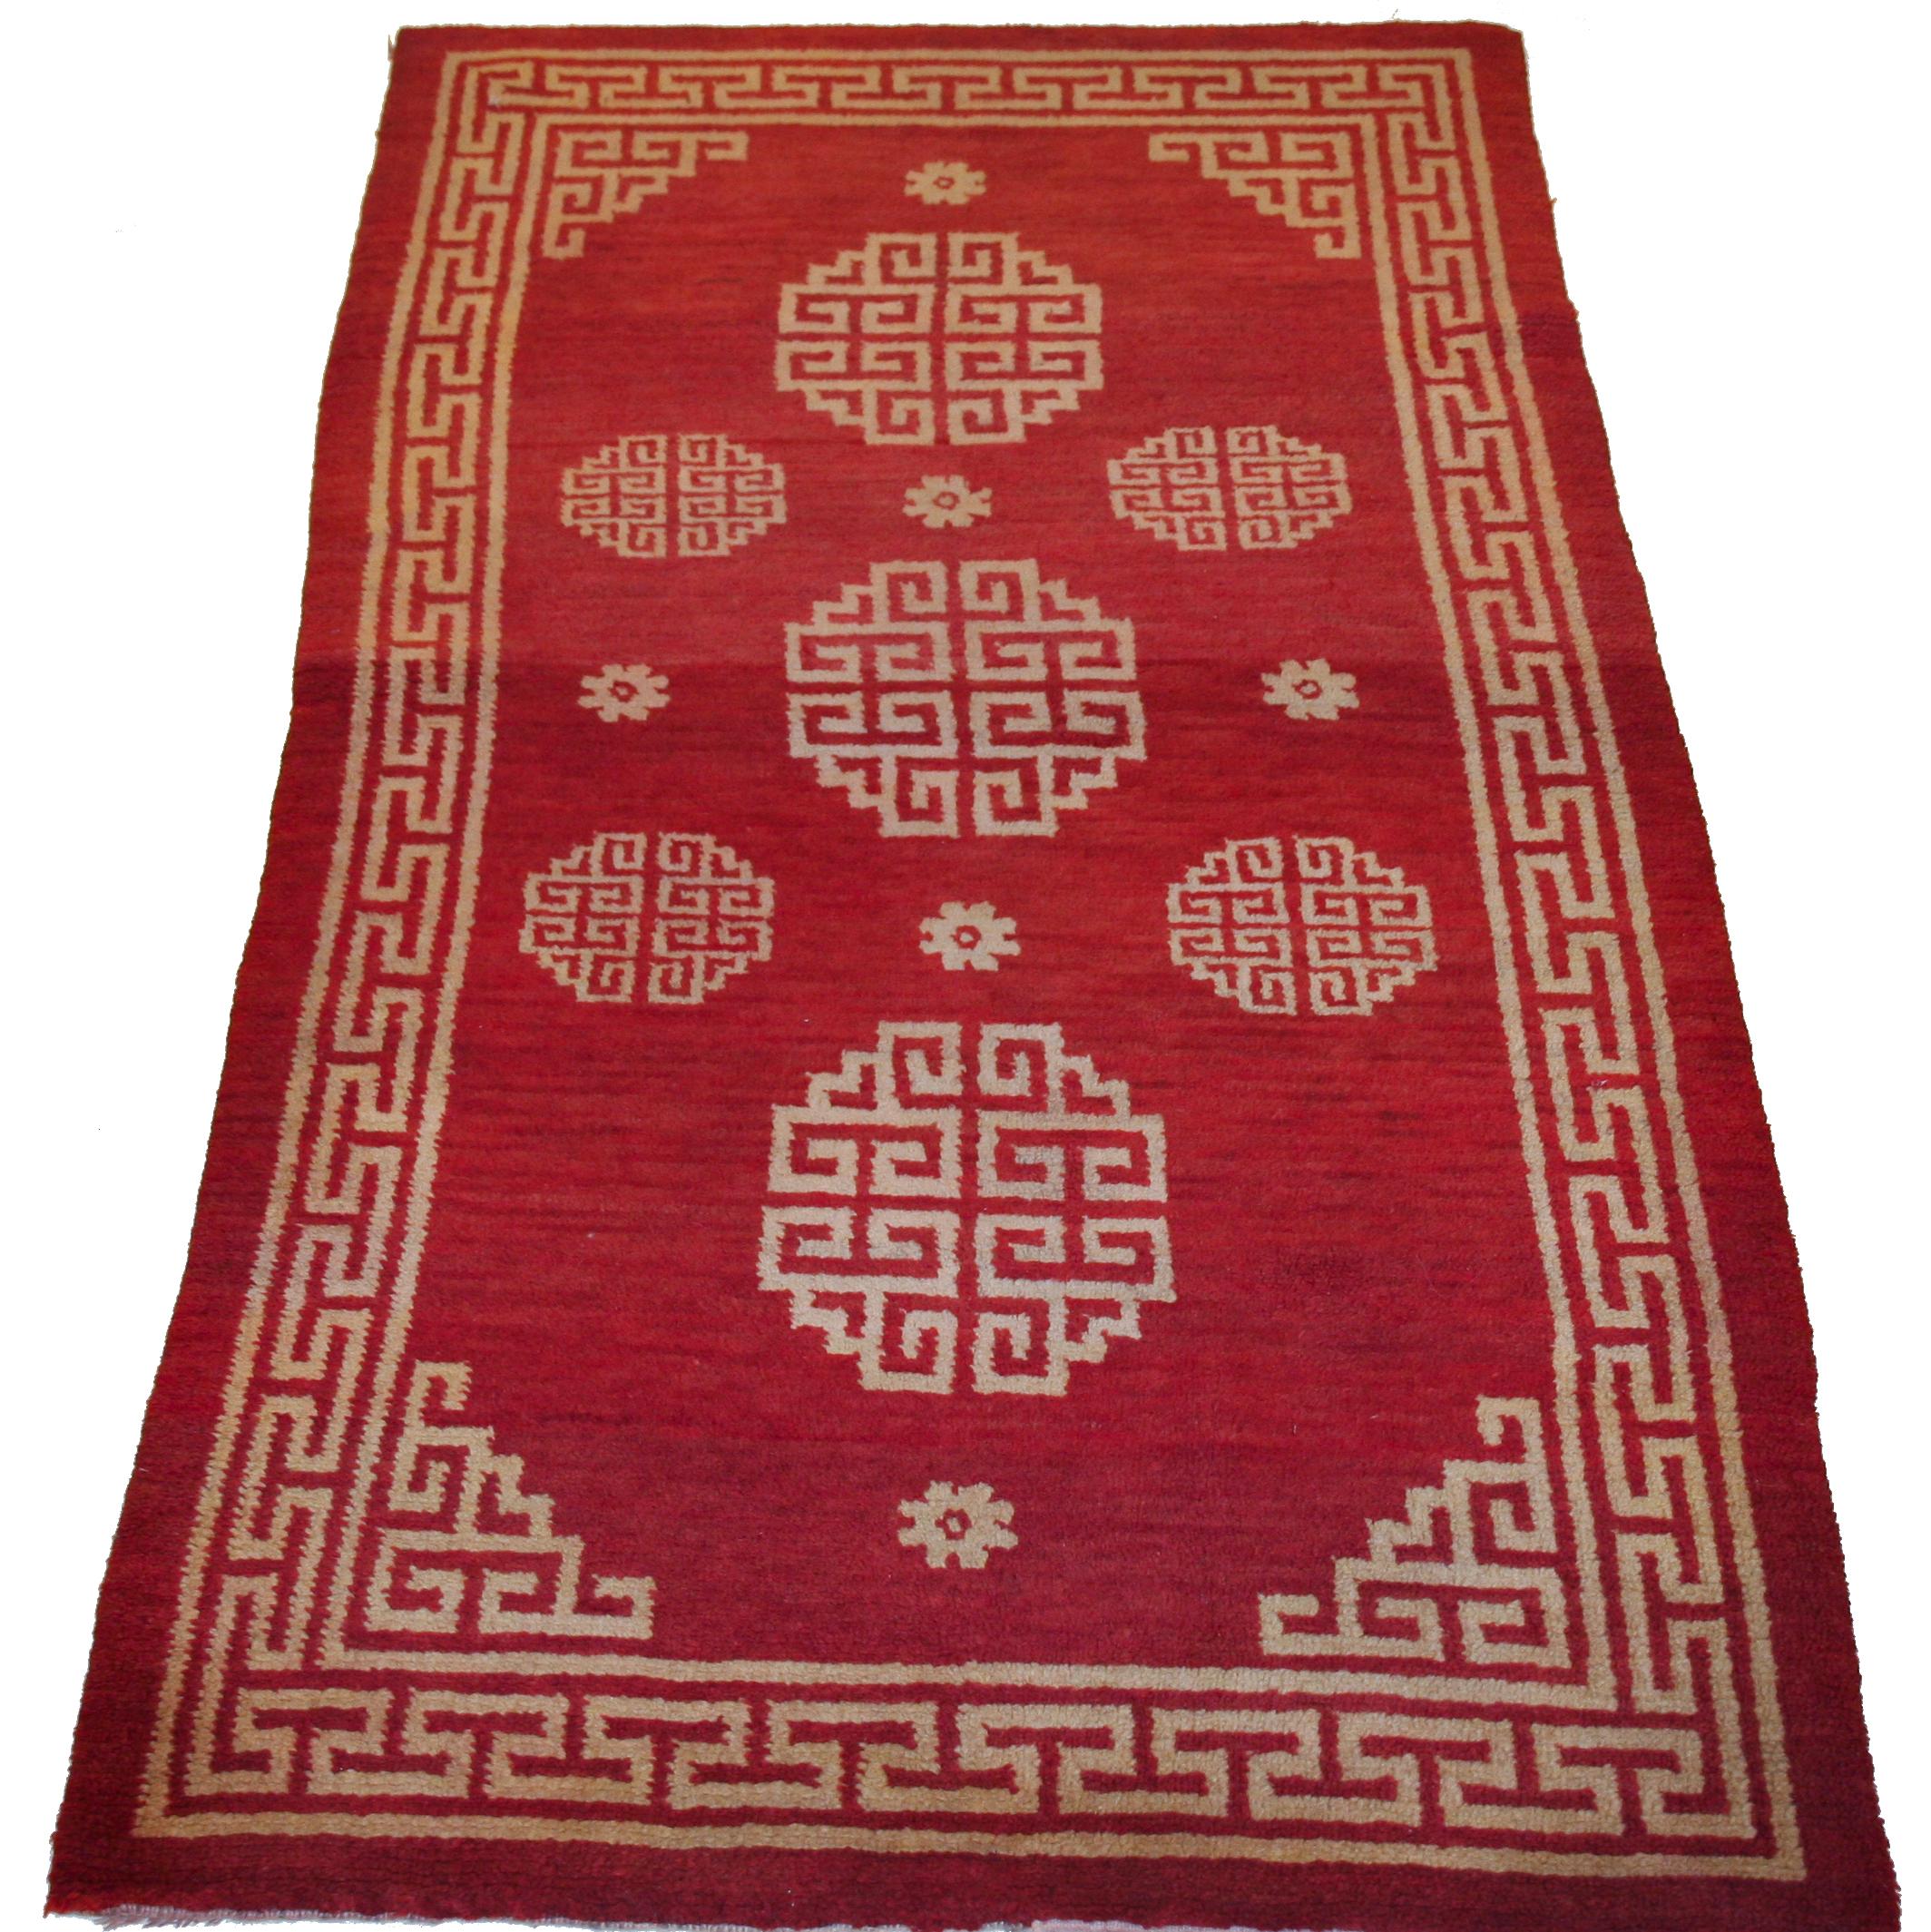 west asia carpet design